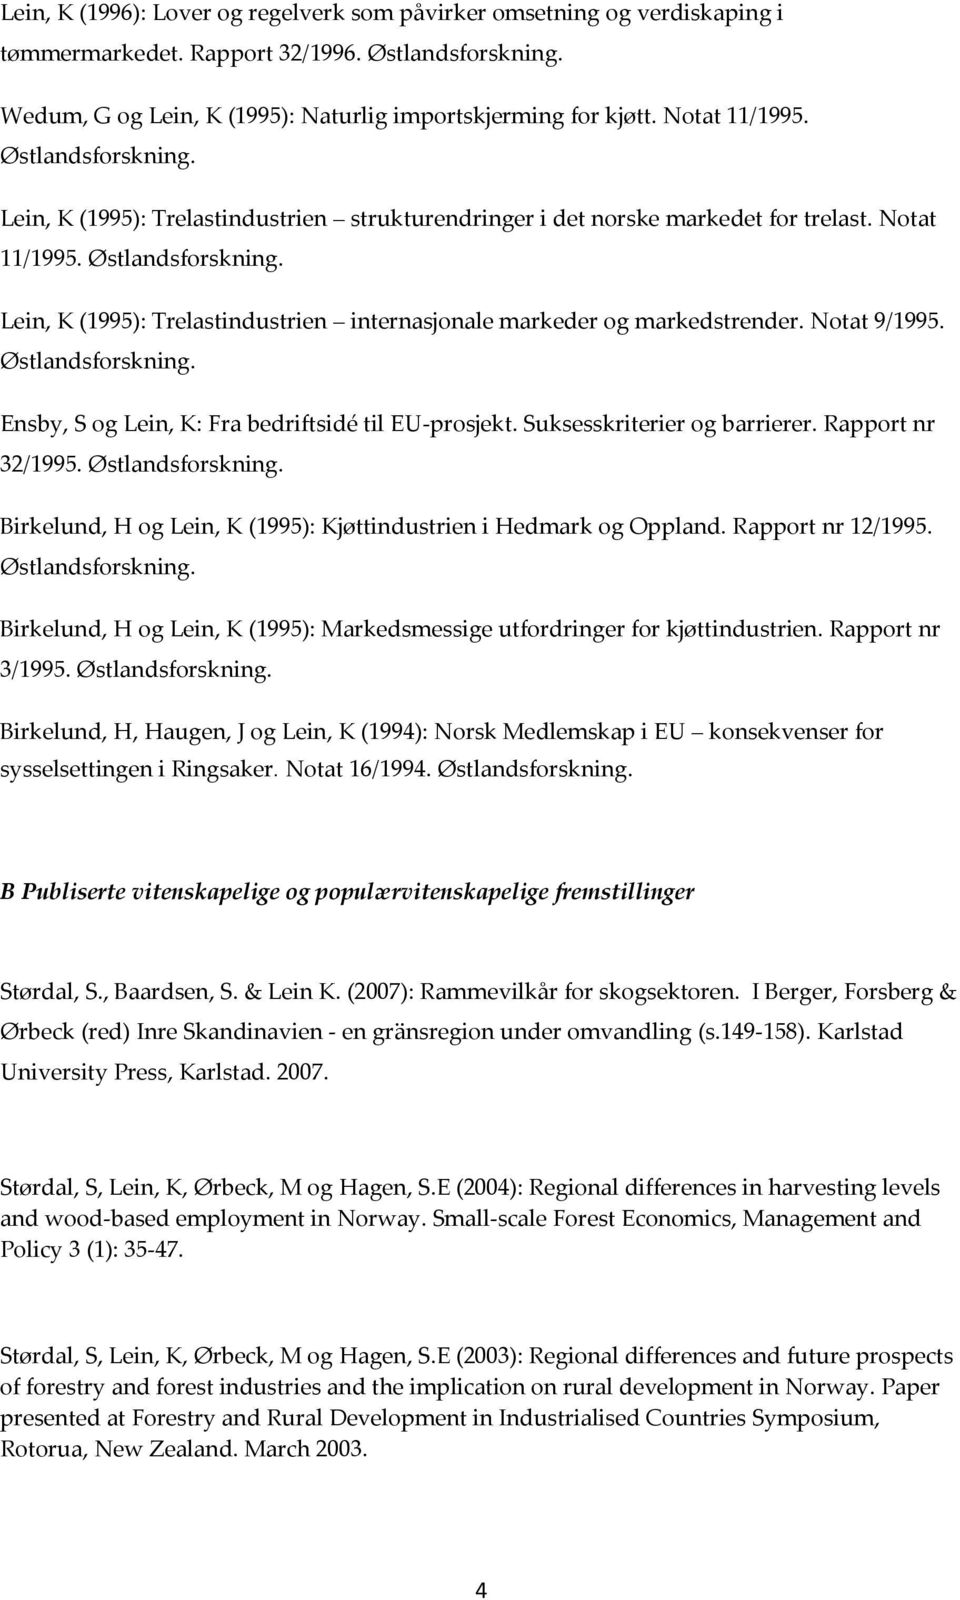 Ensby, S og Lein, K: Fra bedriftsidé til EU-prosjekt. Suksesskriterier og barrierer. Rapport nr 32/1995. Birkelund, H og Lein, K (1995): Kjøttindustrien i Hedmark og Oppland. Rapport nr 12/1995.